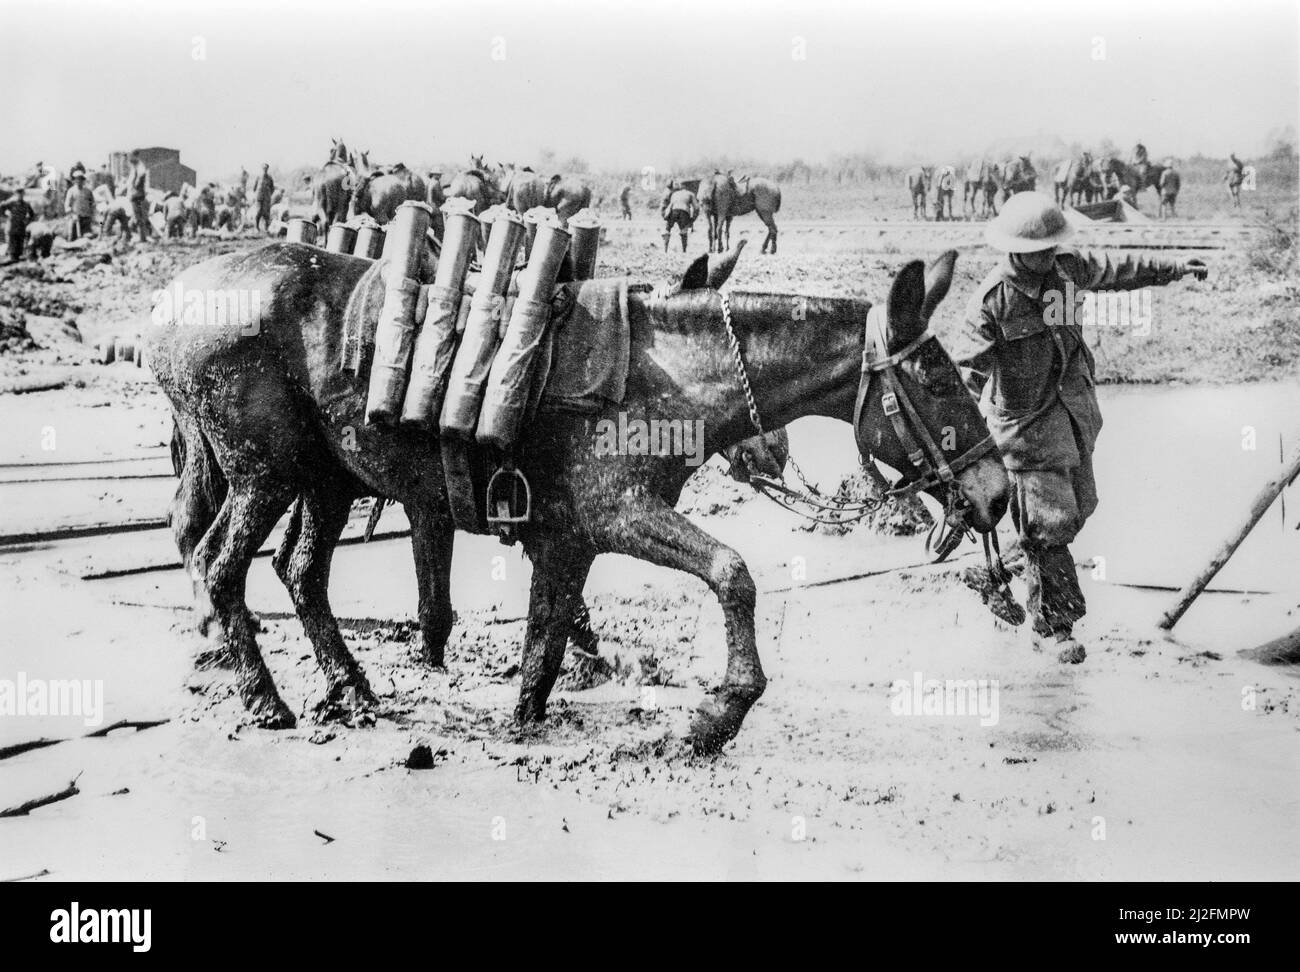 Caballos y mulas utilizados para transportar proyectiles de artillería de la Primera Guerra Mundial en el frente / campo de batalla durante la Primera Guerra Mundial en Flandes Occidental, Bélgica Foto de stock